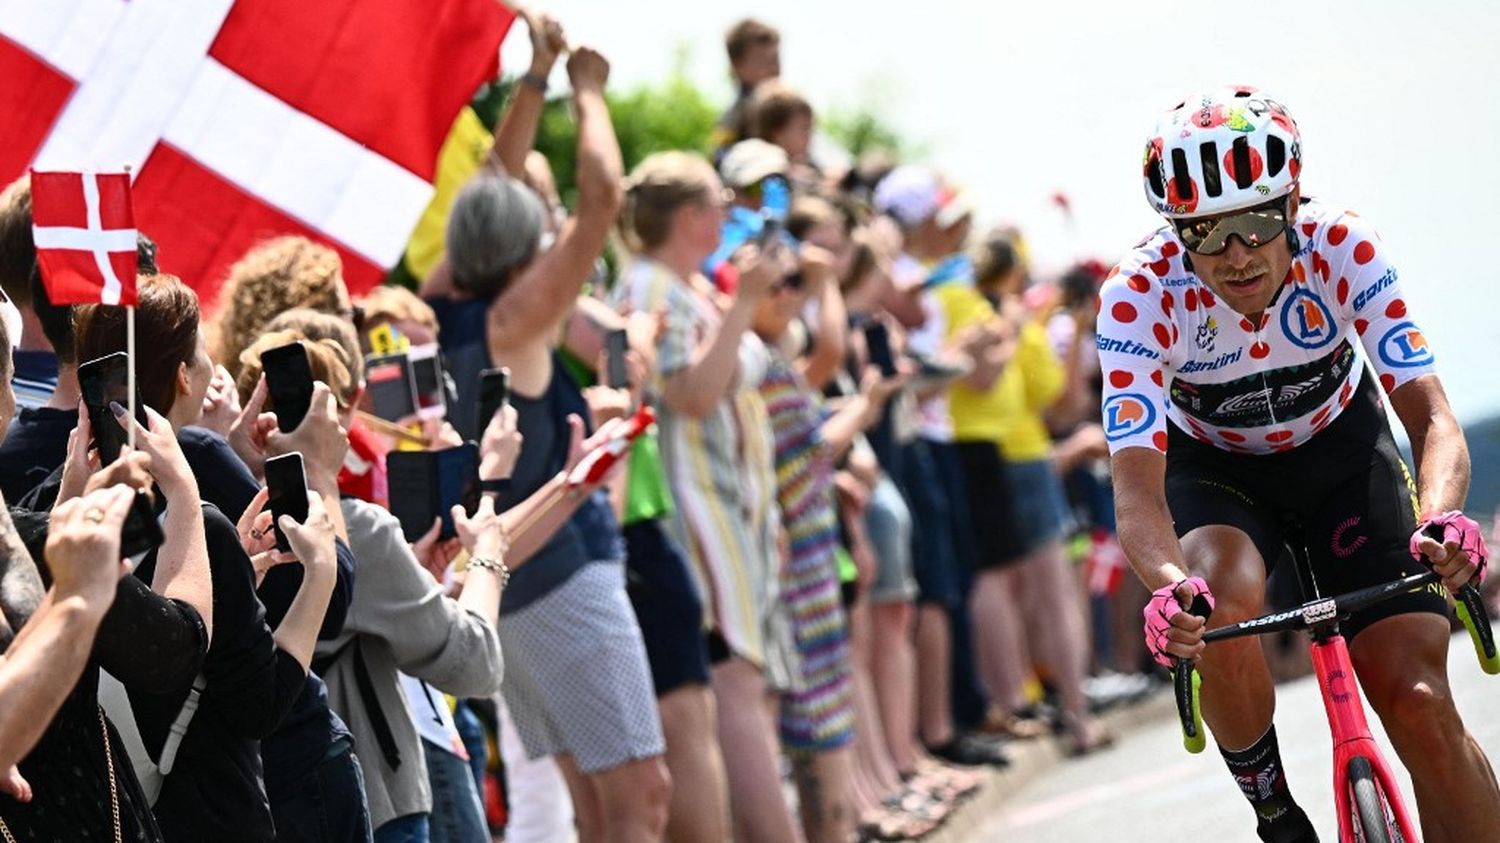 DIRECT. Tour de France 2022 : le Danois Magnus Cort Nielsen seul à l'avant, le peloton gère l'écart... Suivez la course entre Vejle et Sonderborg - franceinfo